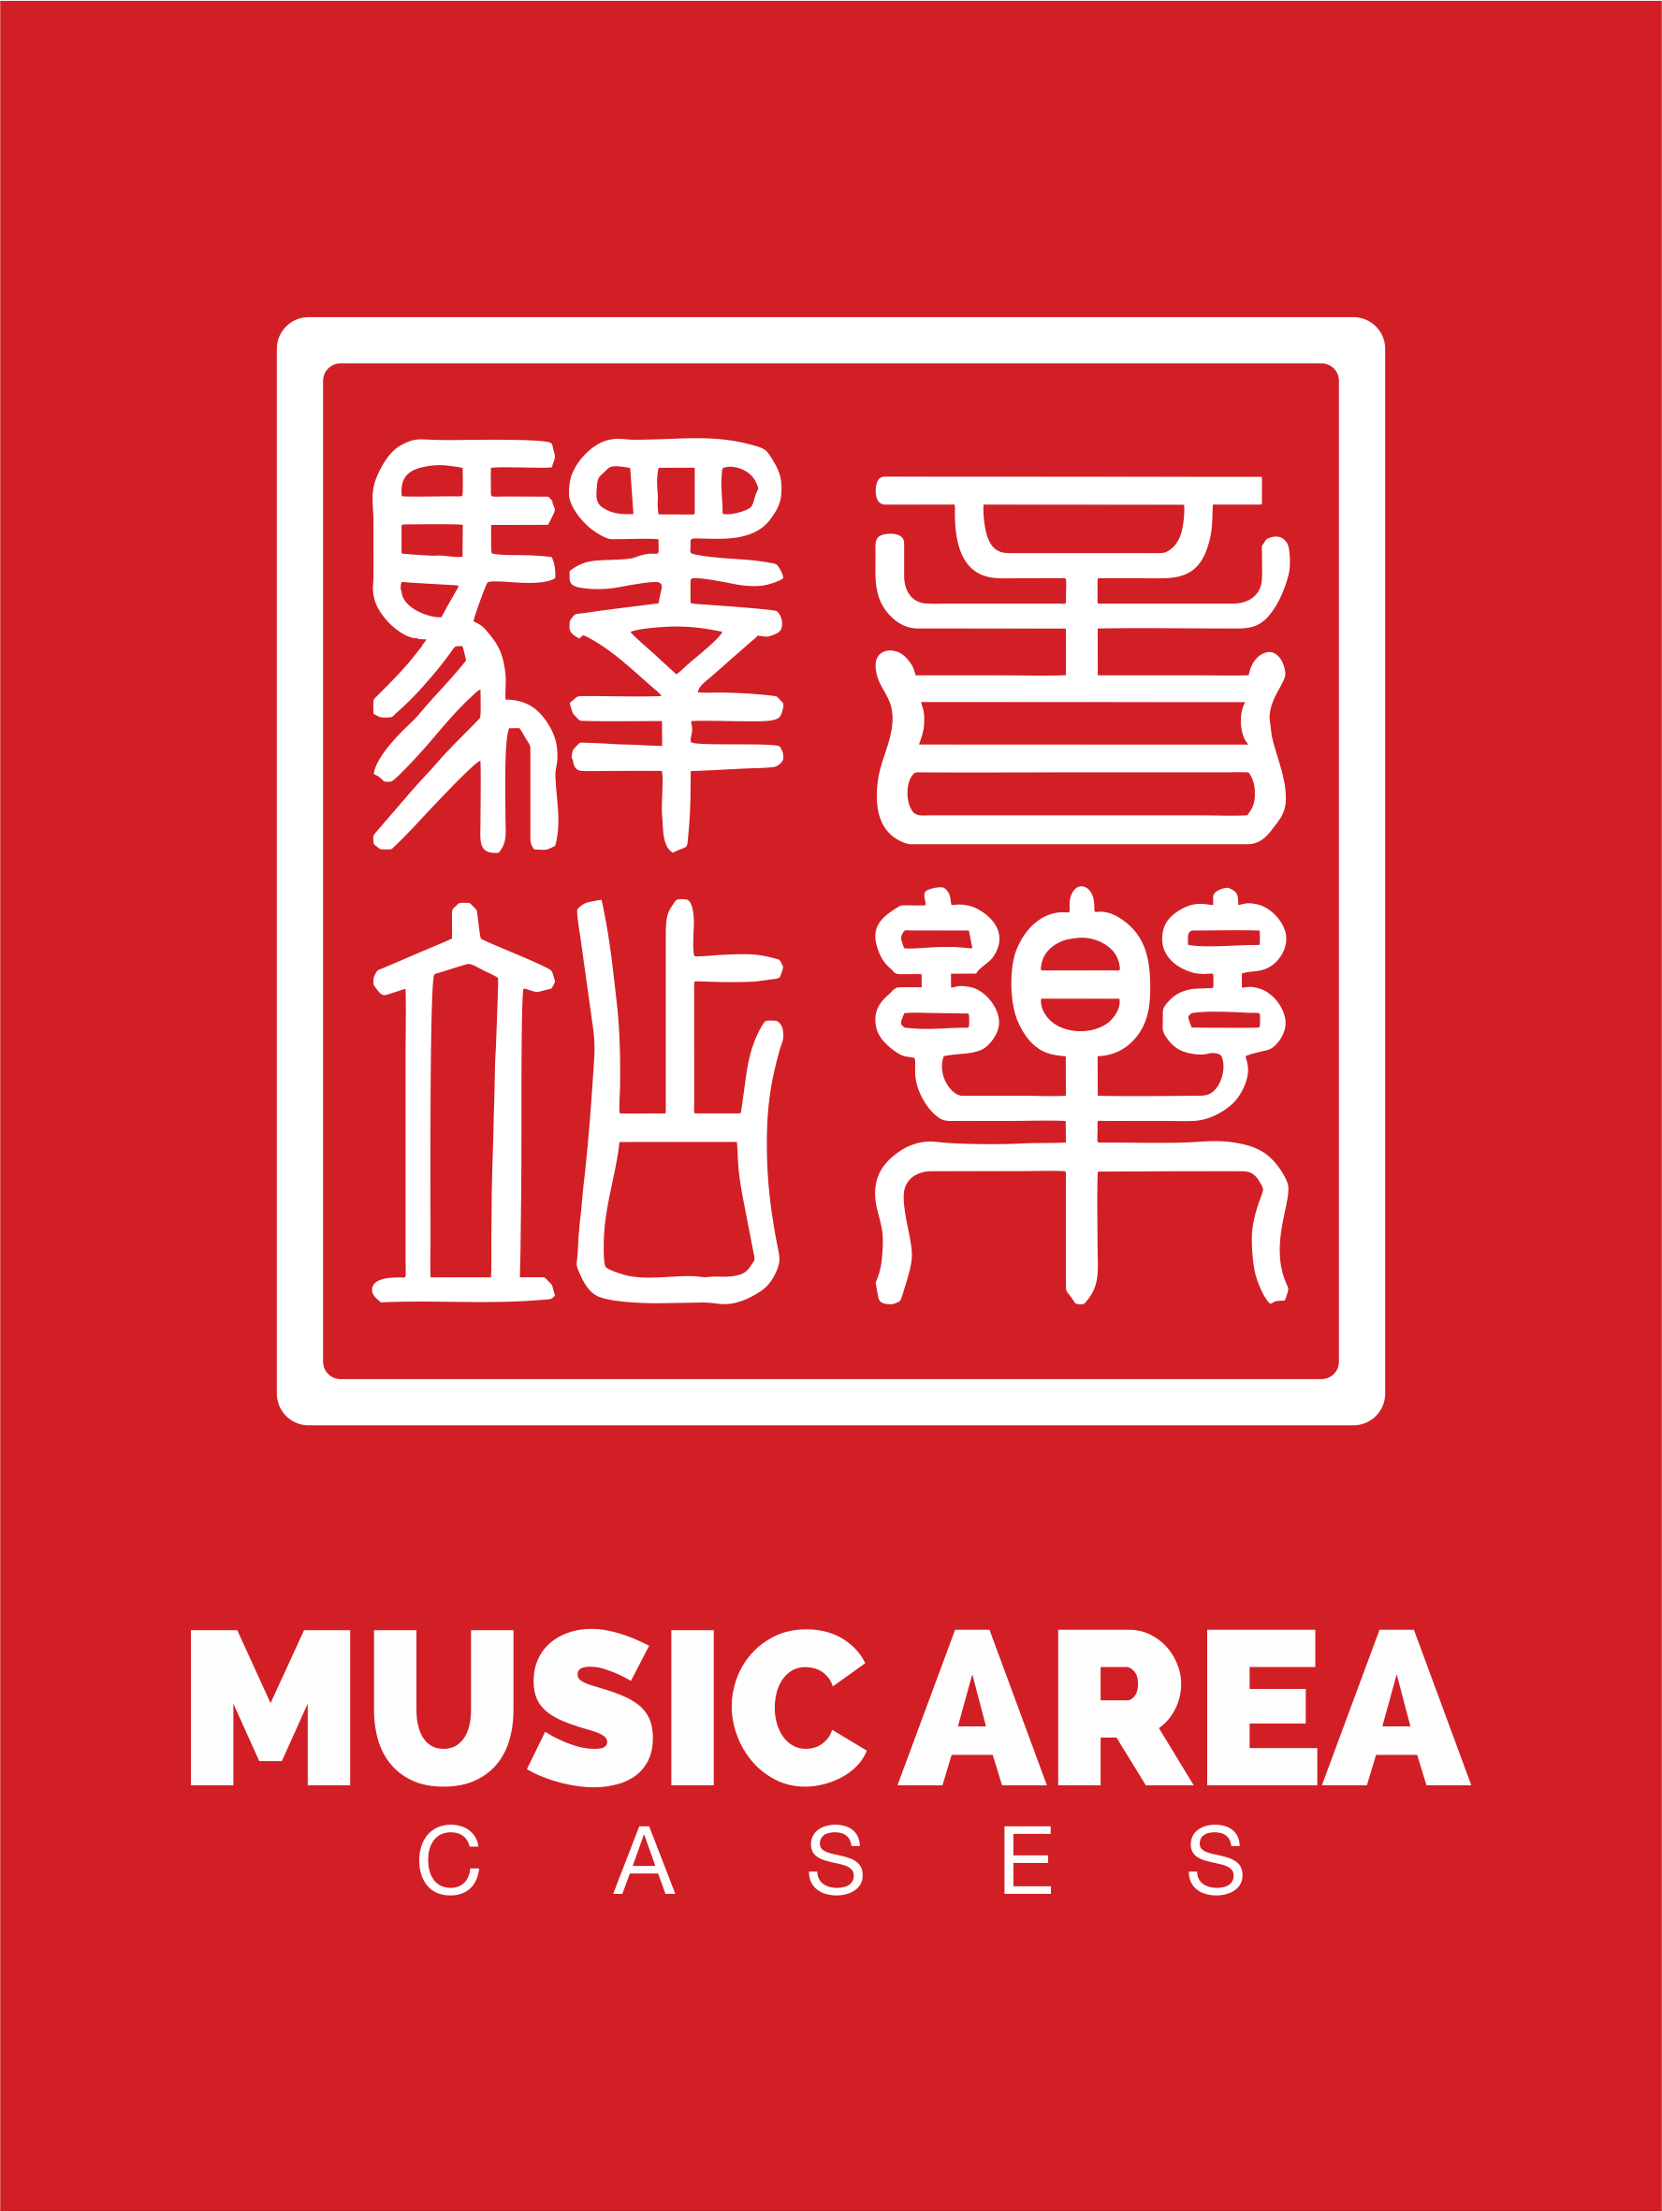 Area Logo - Music Area Logo | Music Area - Premium Protection for Precious Property